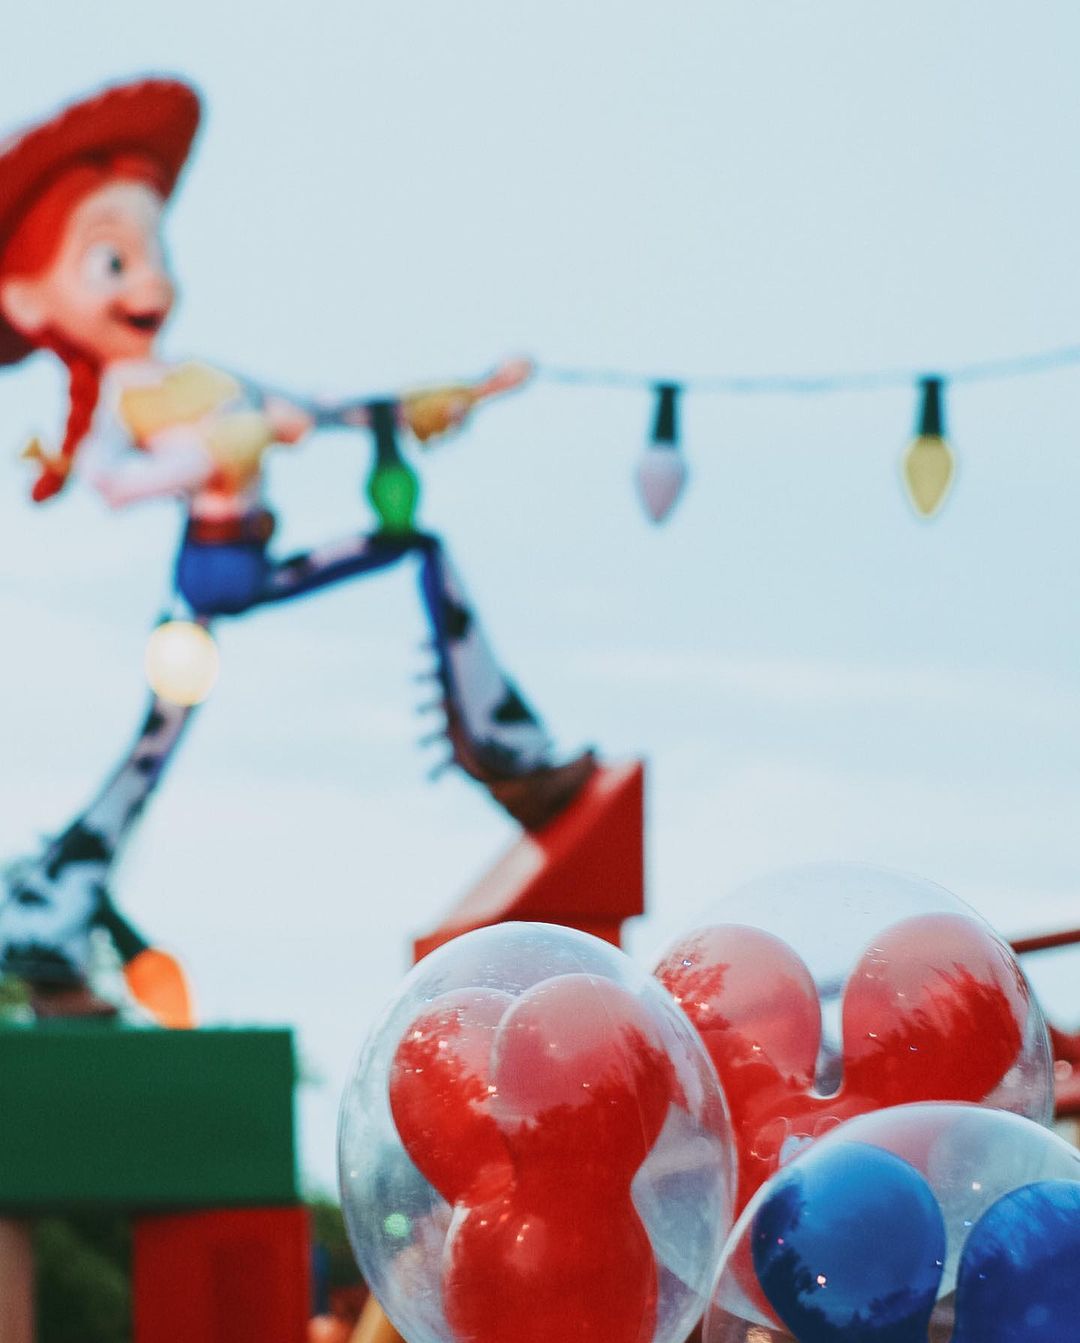 Temática da Área de Toy Story no Hollywood Studios